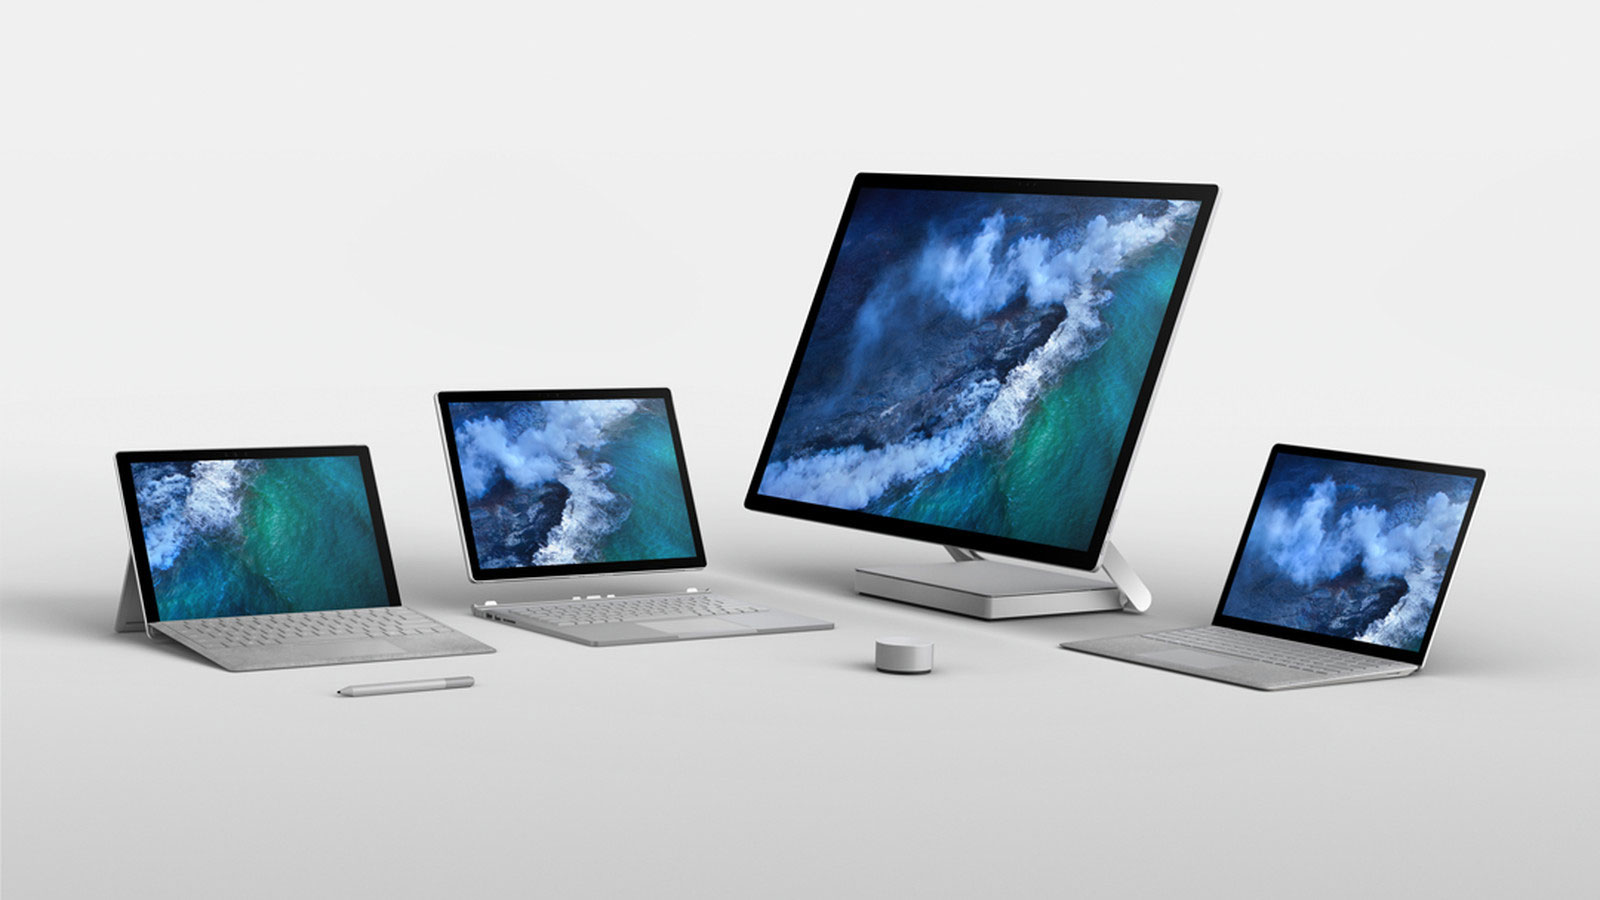 Khảo sát cho thấy Microsoft Surface là thương hiệu laptop duy nhất có thể cạnh tranh với MacBook của Apple